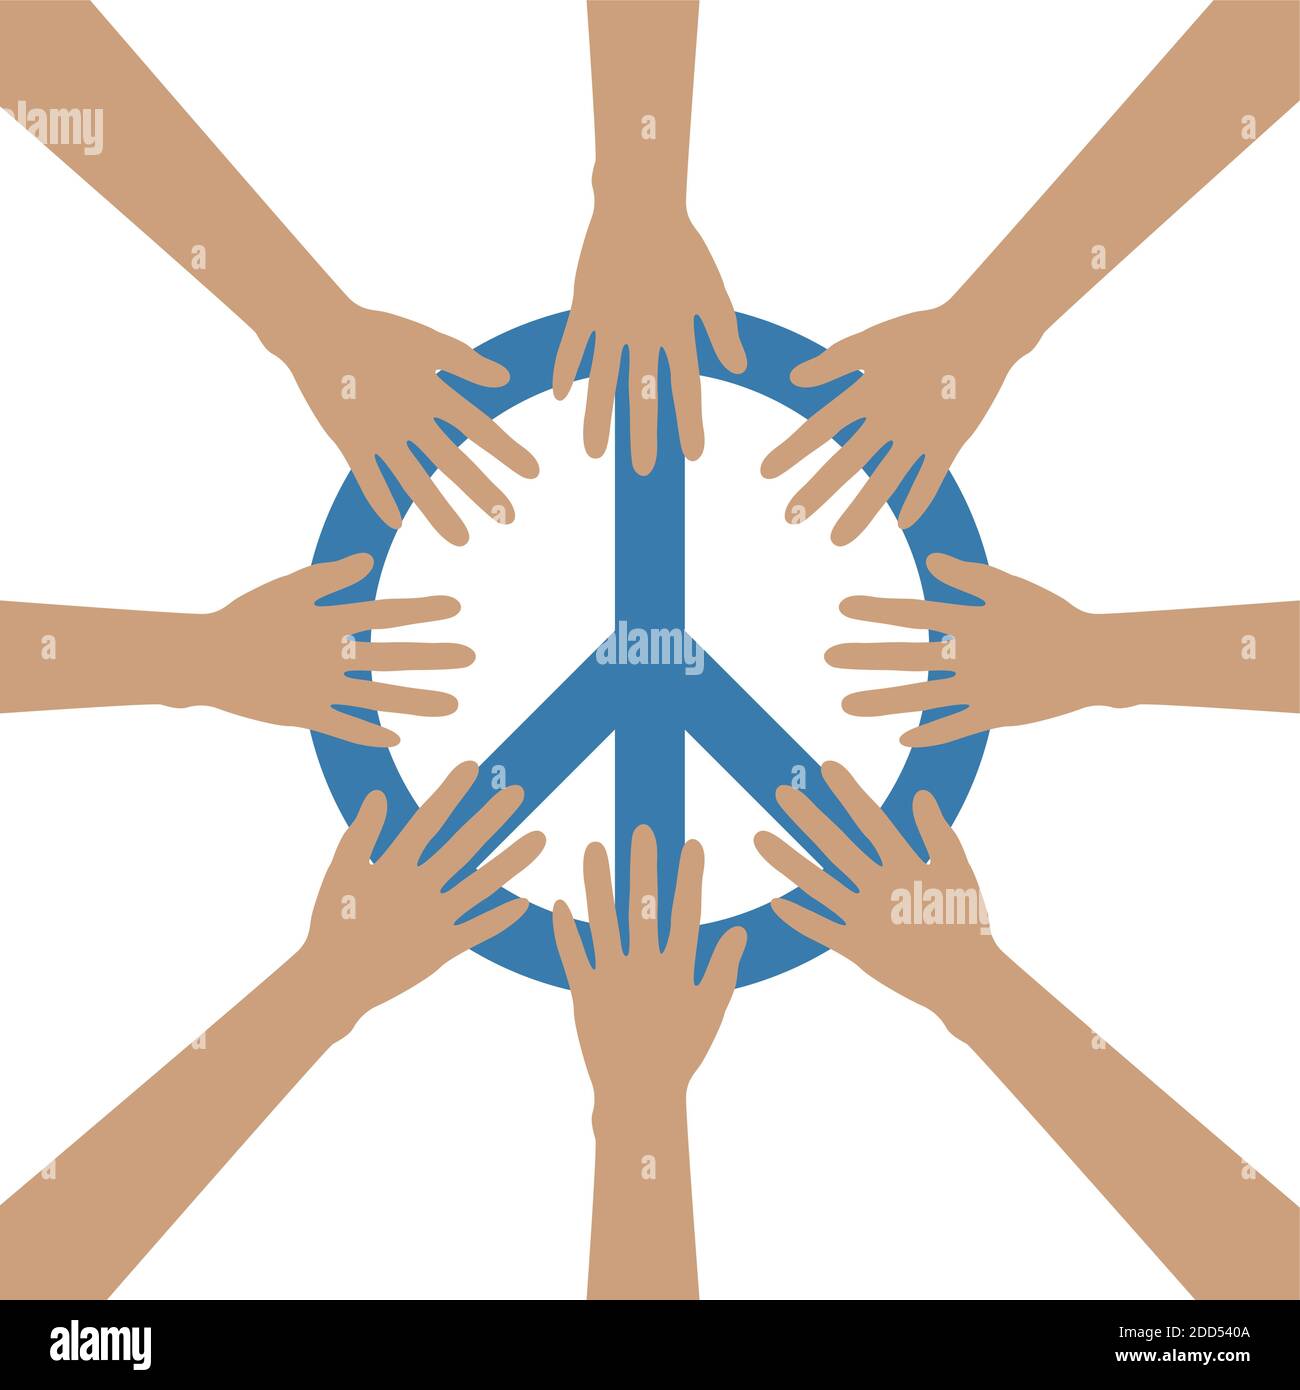 Gruppe von menschlichen Händen bilden einen Kreis um das Friedenssymbol vektorgrafik EPS10 Stock Vektor